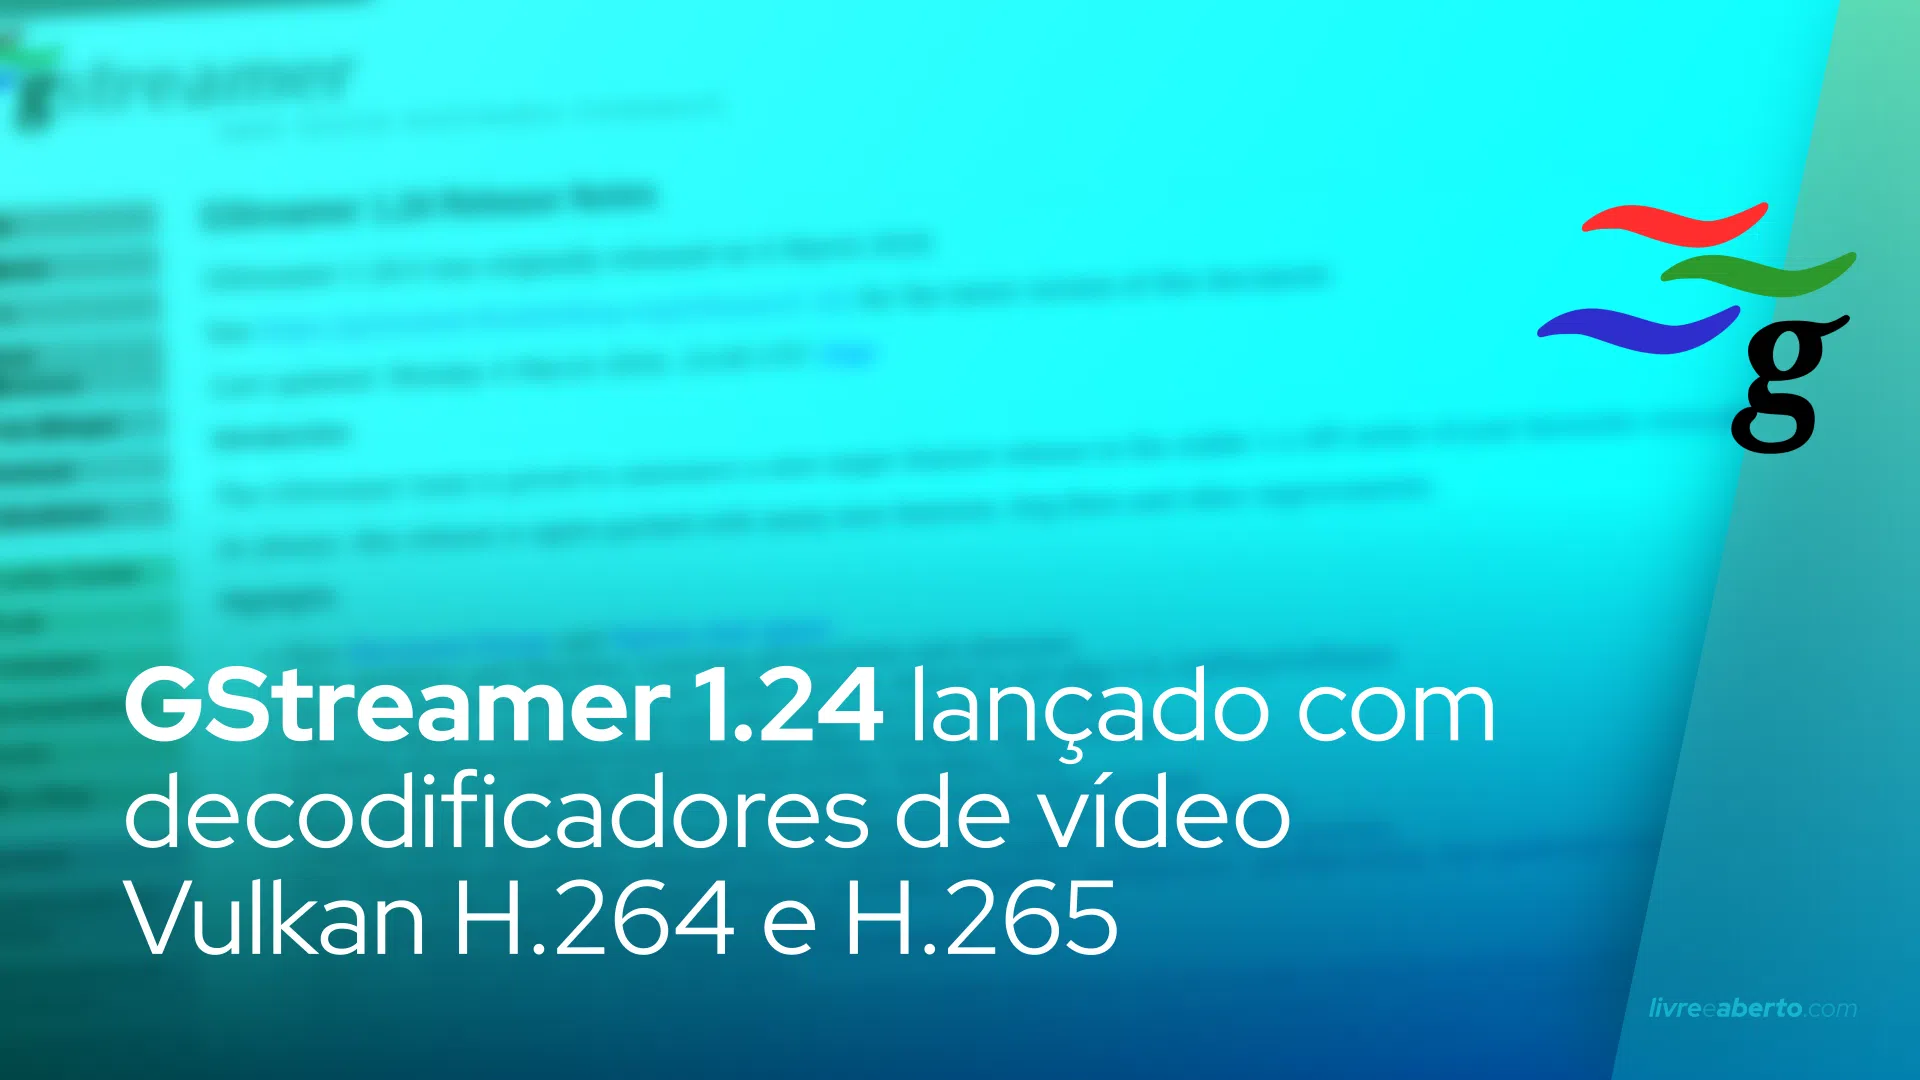 GStreamer 1.24 Multimedia Framework lançado com decodificadores de vídeo Vulkan H.264 e H.265